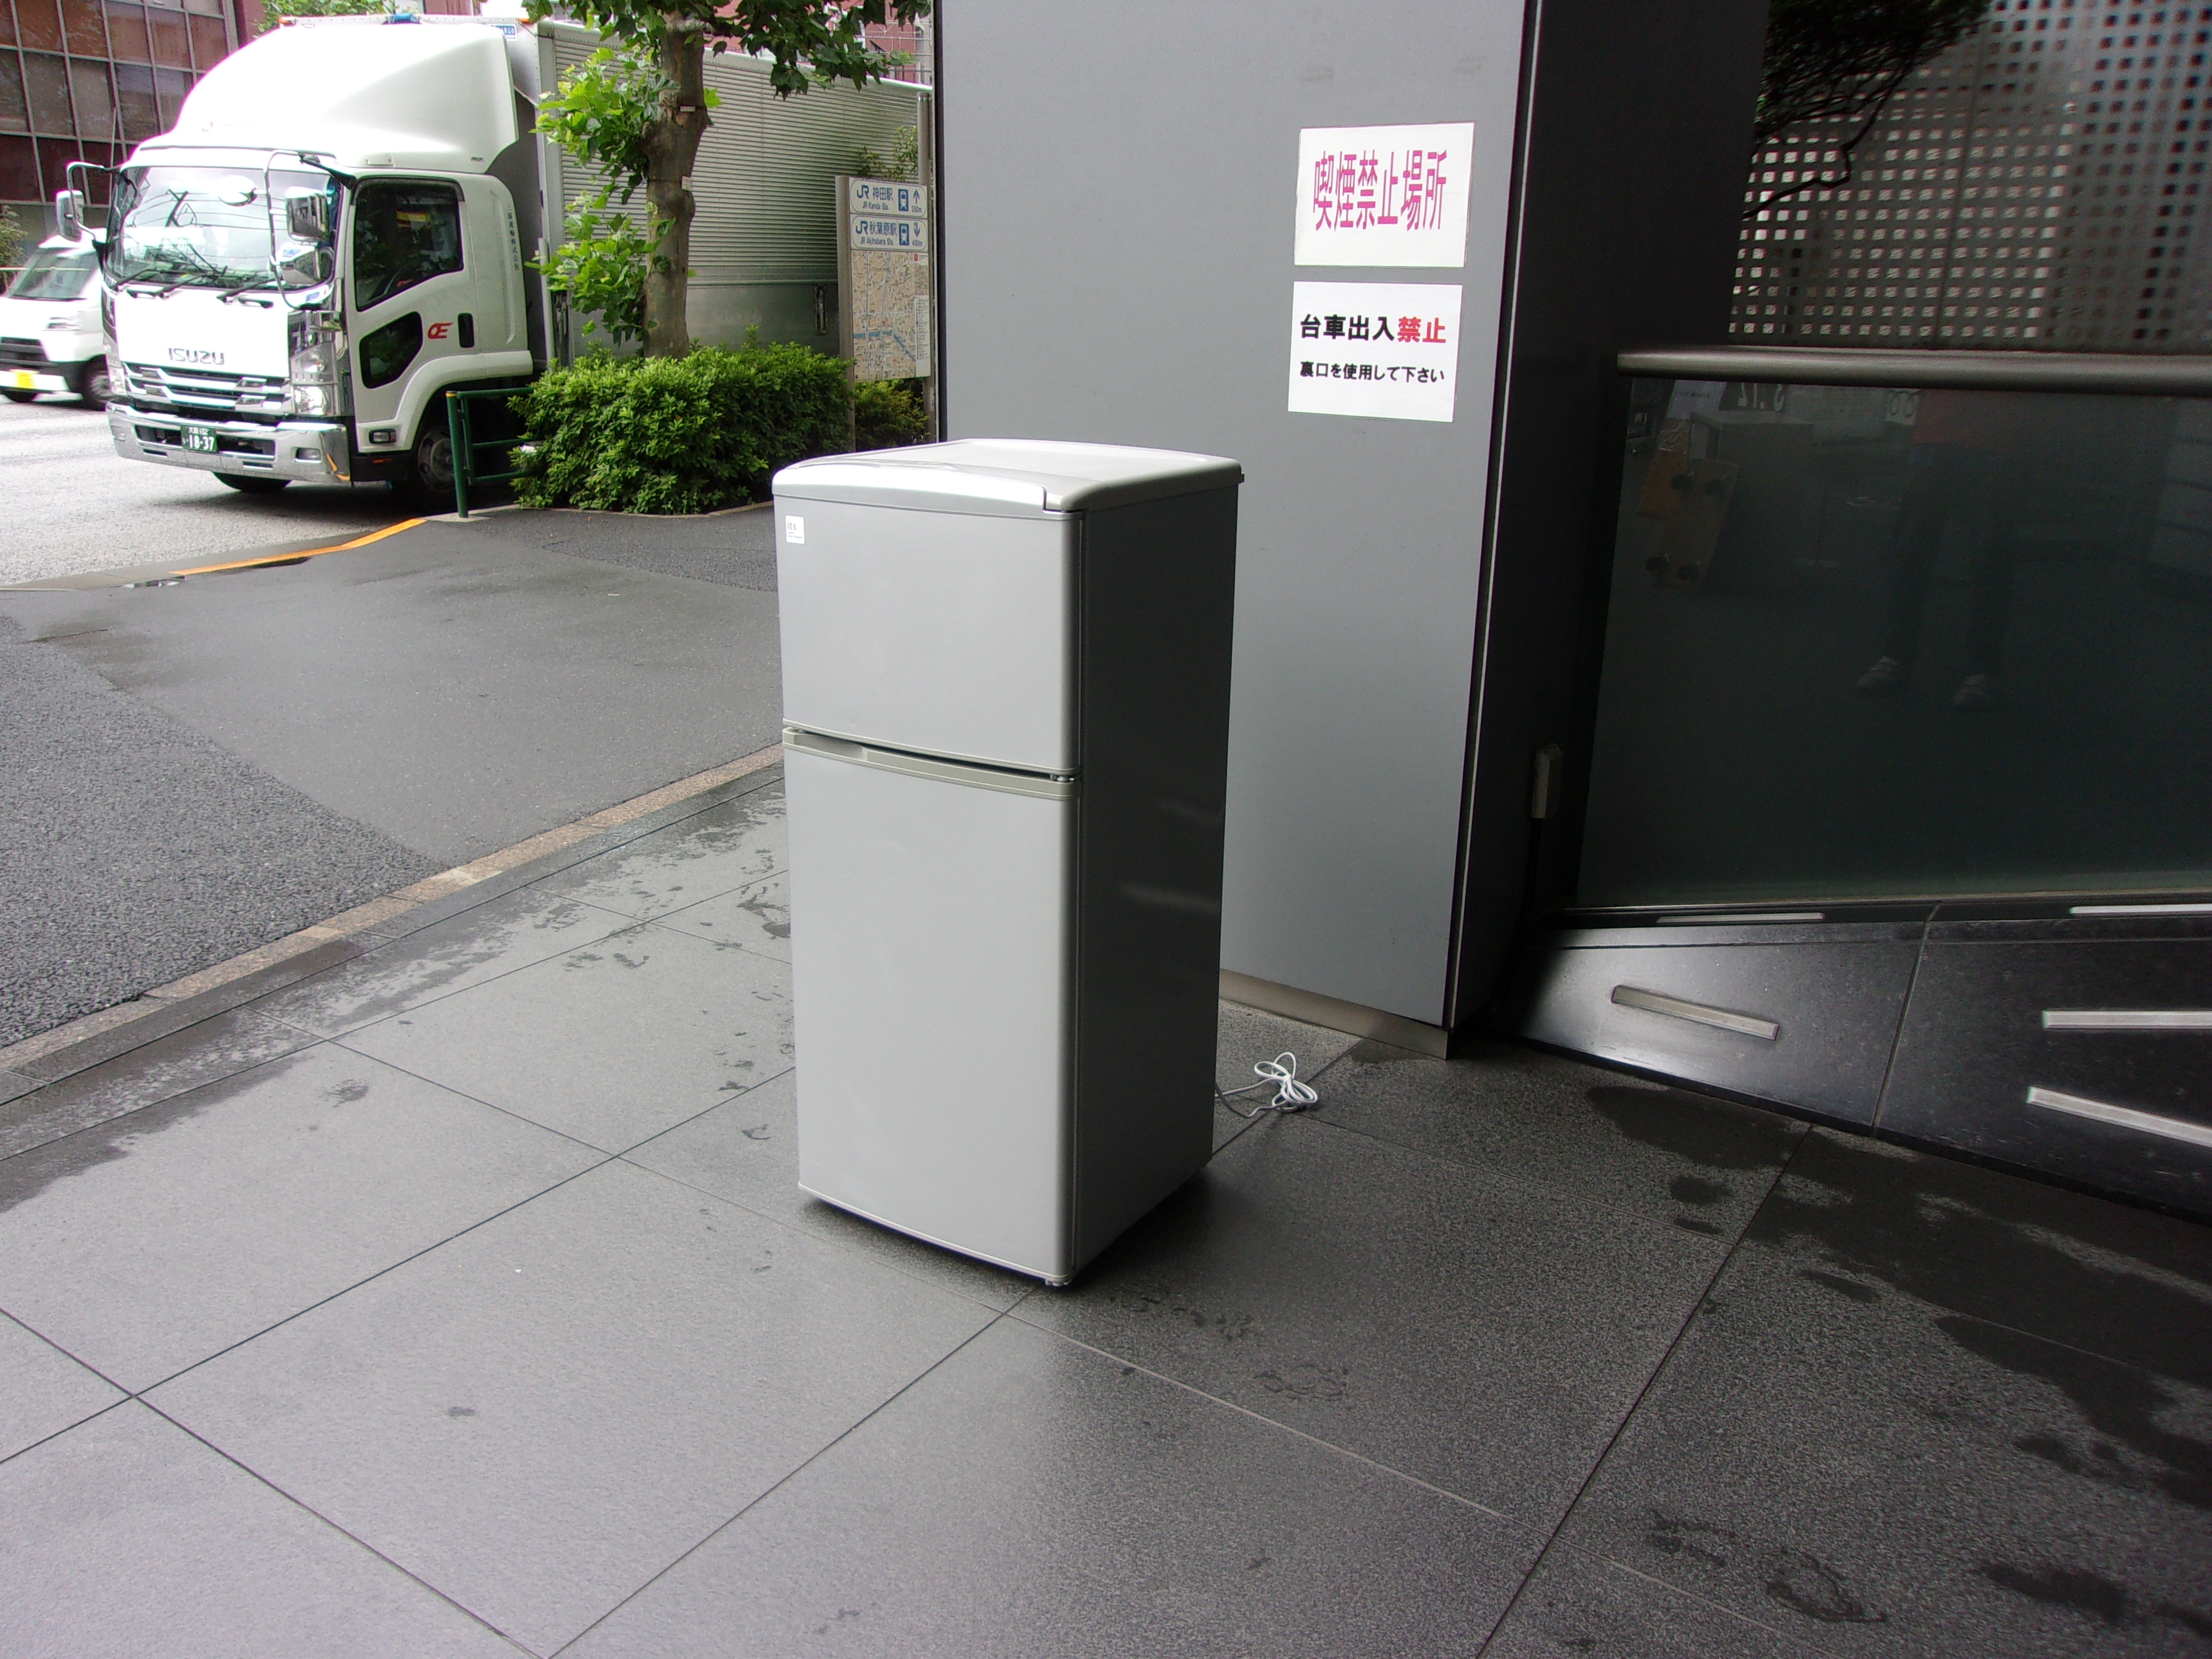 2ドア冷凍冷蔵庫(サンヨー)/SR-111V